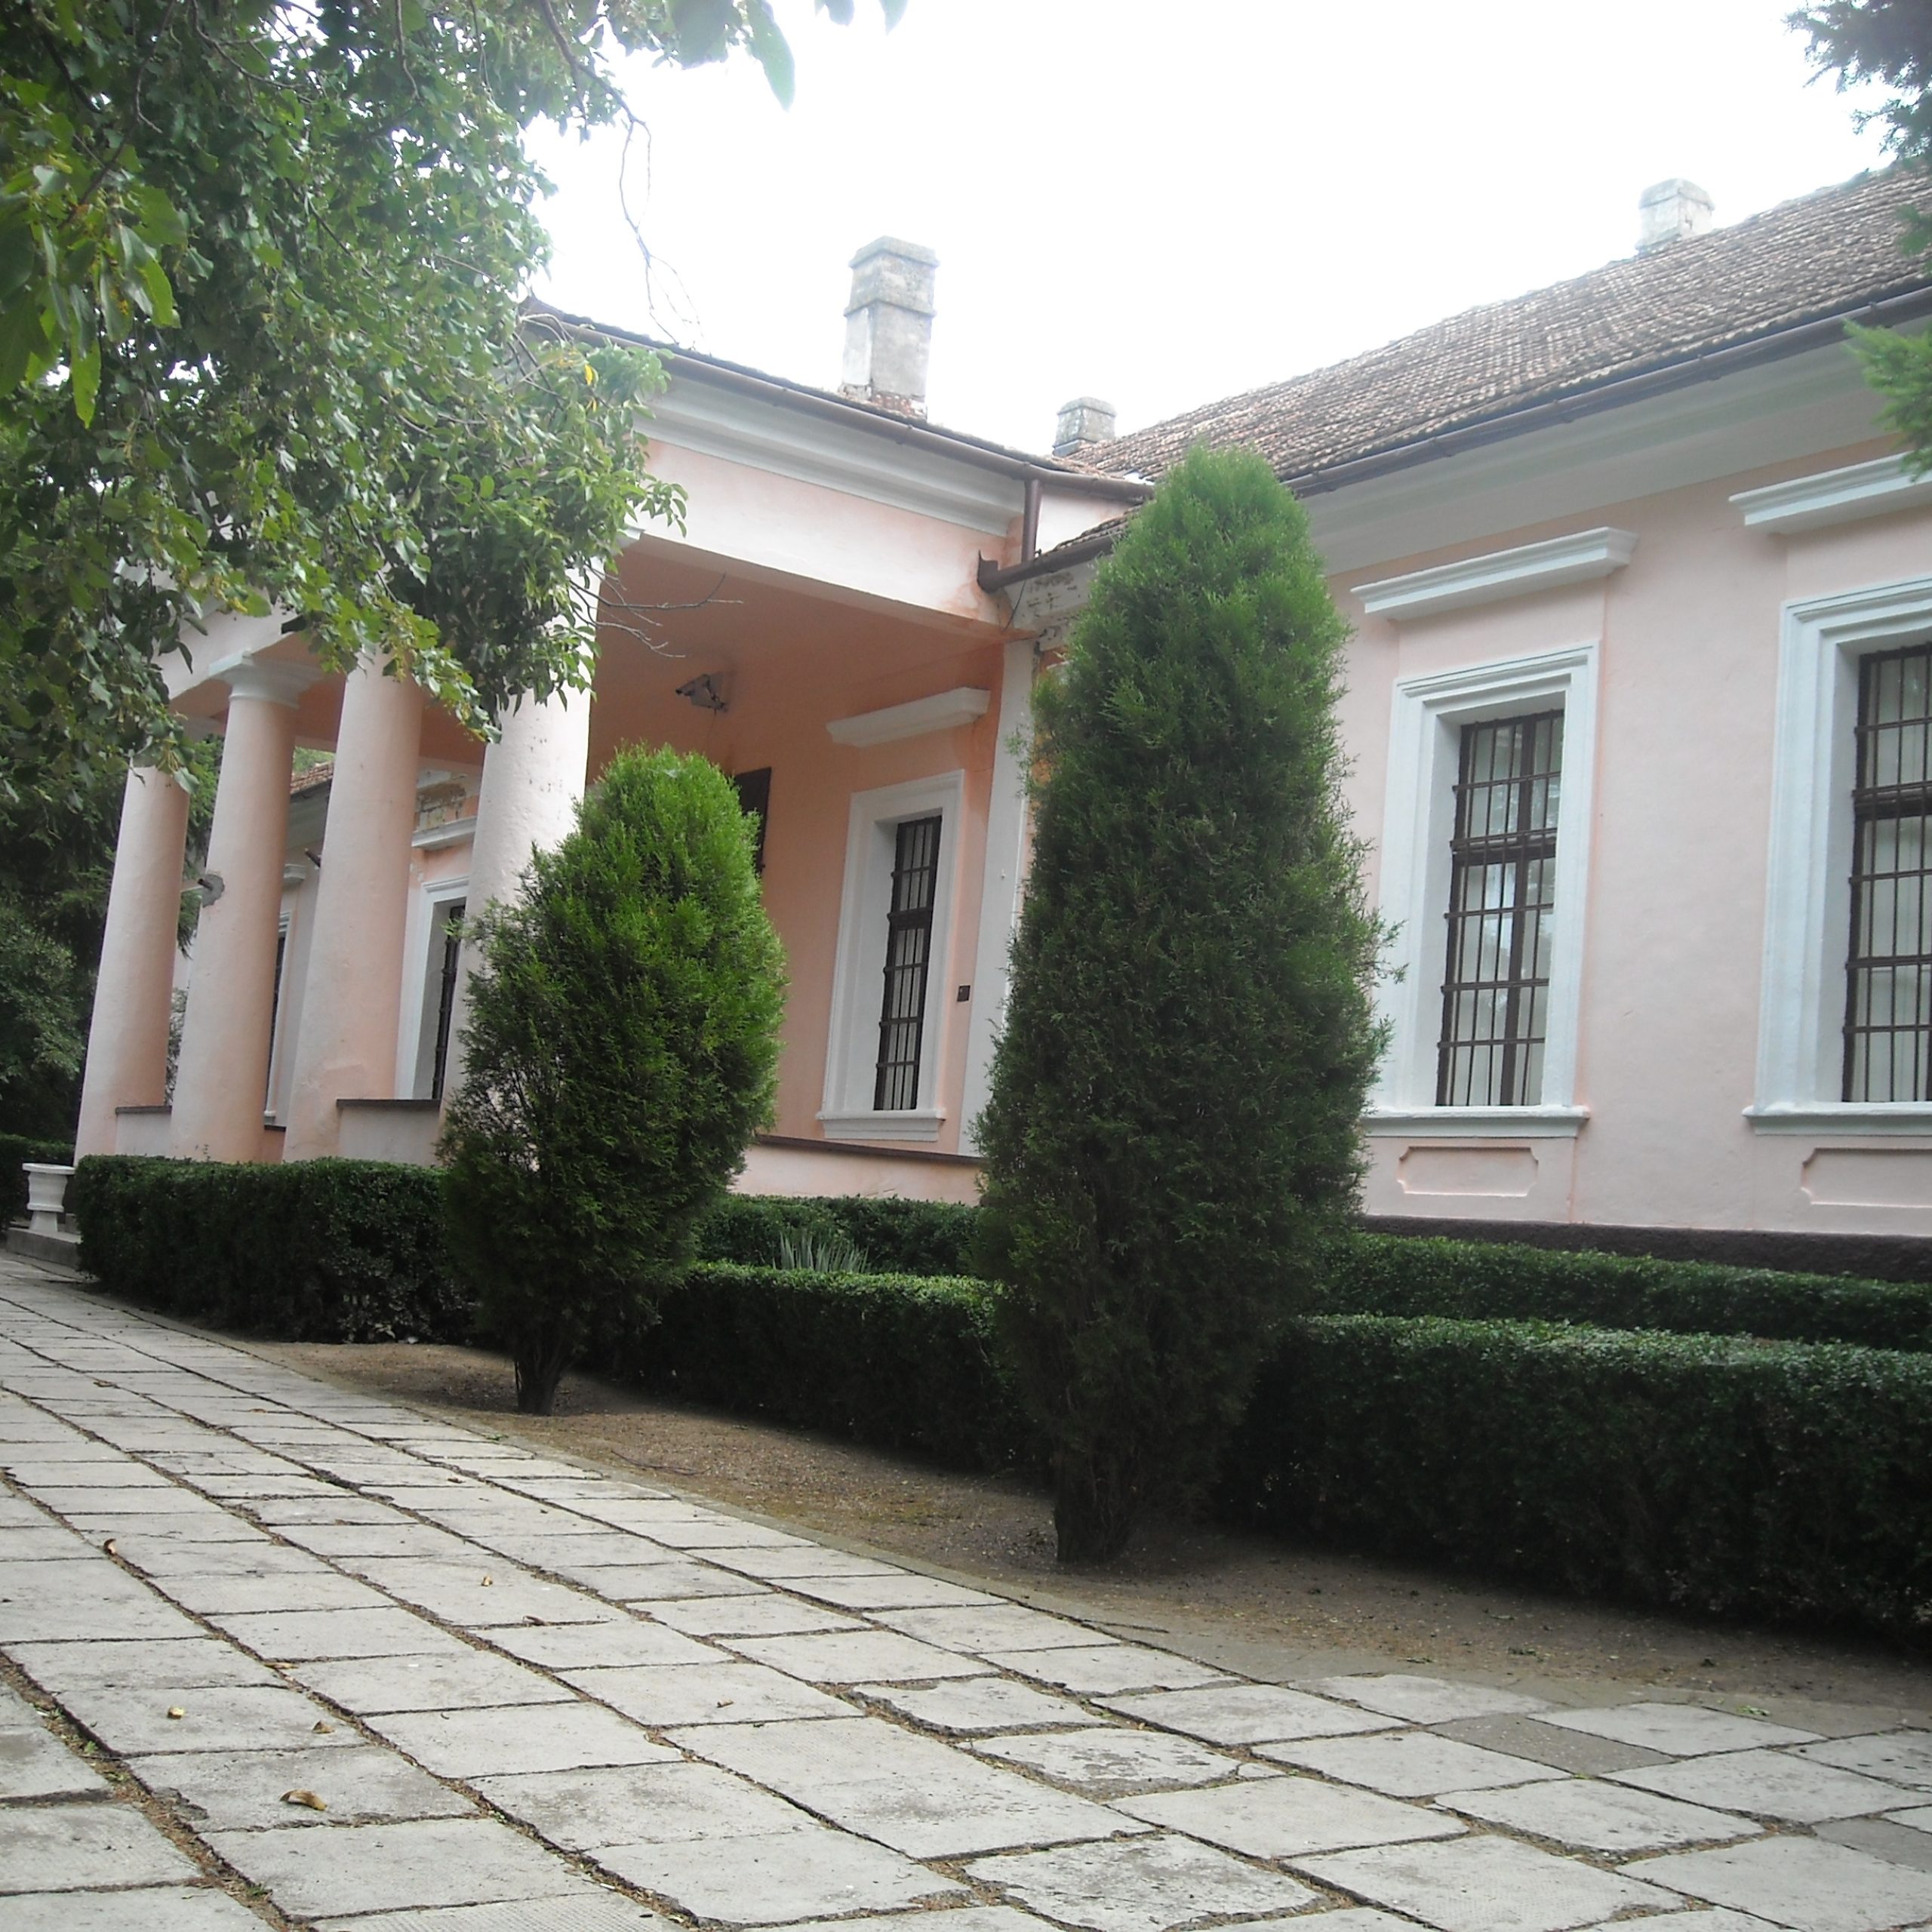 Explorați Casa Memorială Ioan Slavici, casă-muzeu care păstrează viu spiritul și opera unuia dintre cei mai importanți scriitori români. Descoperiți-o acum!